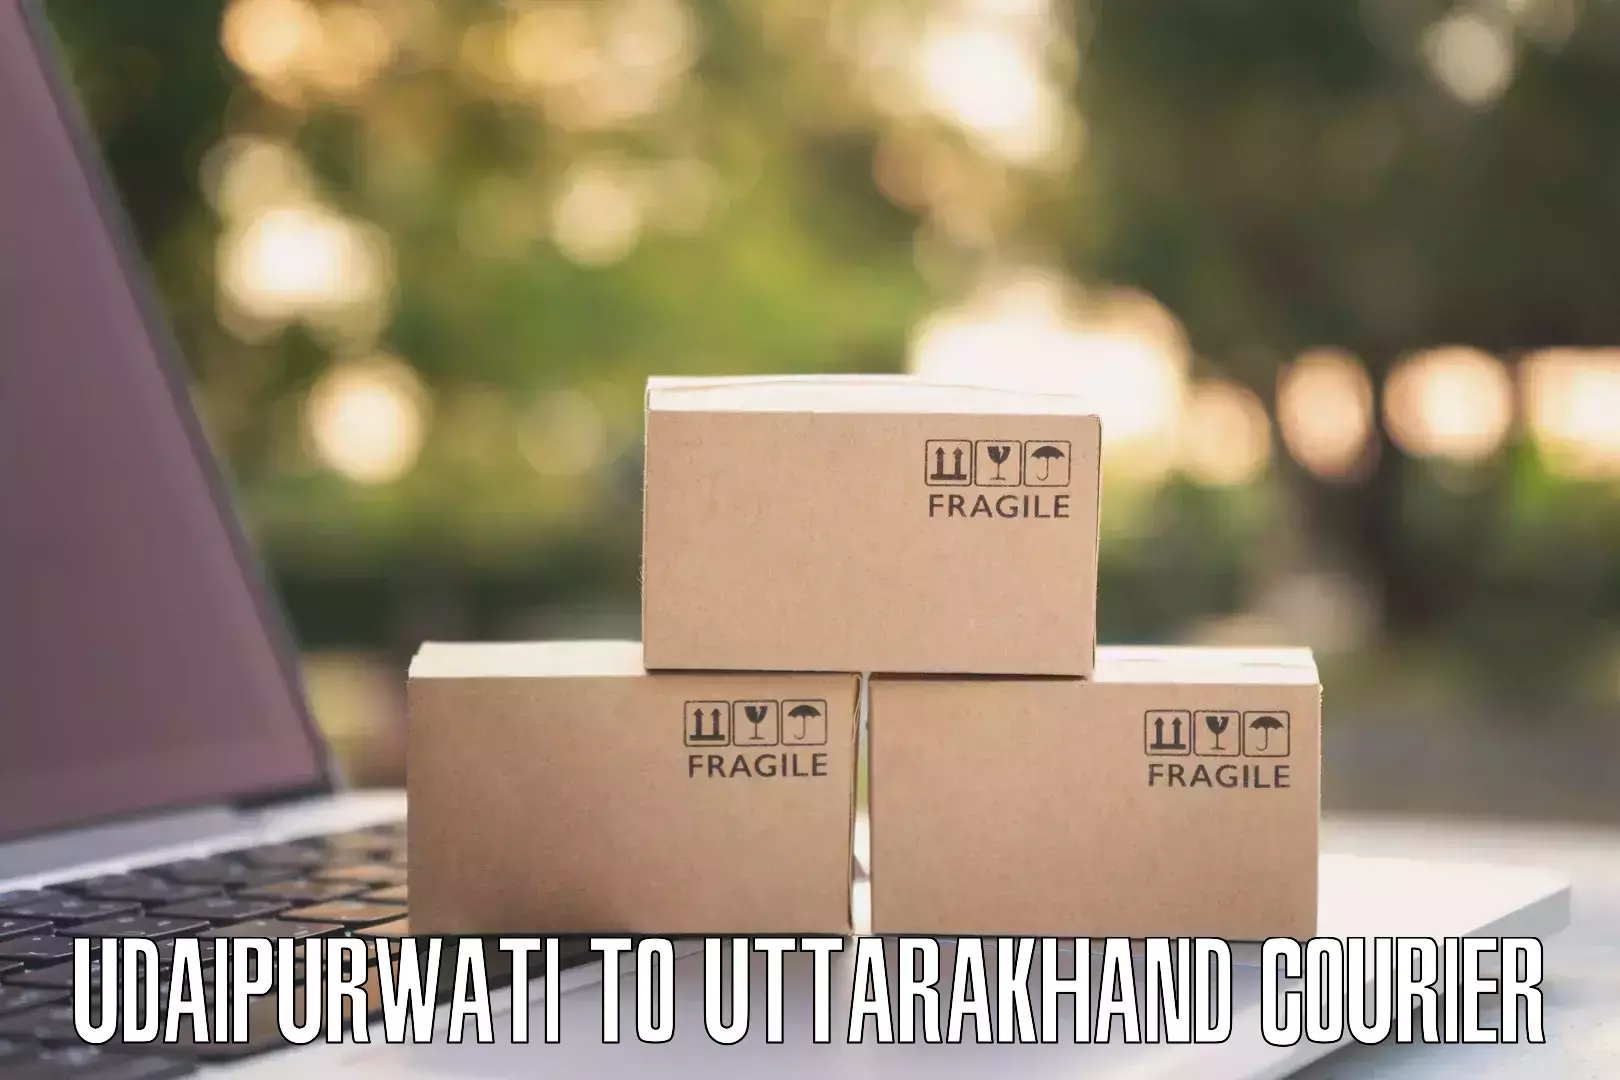 Customer-oriented courier services Udaipurwati to Uttarakhand